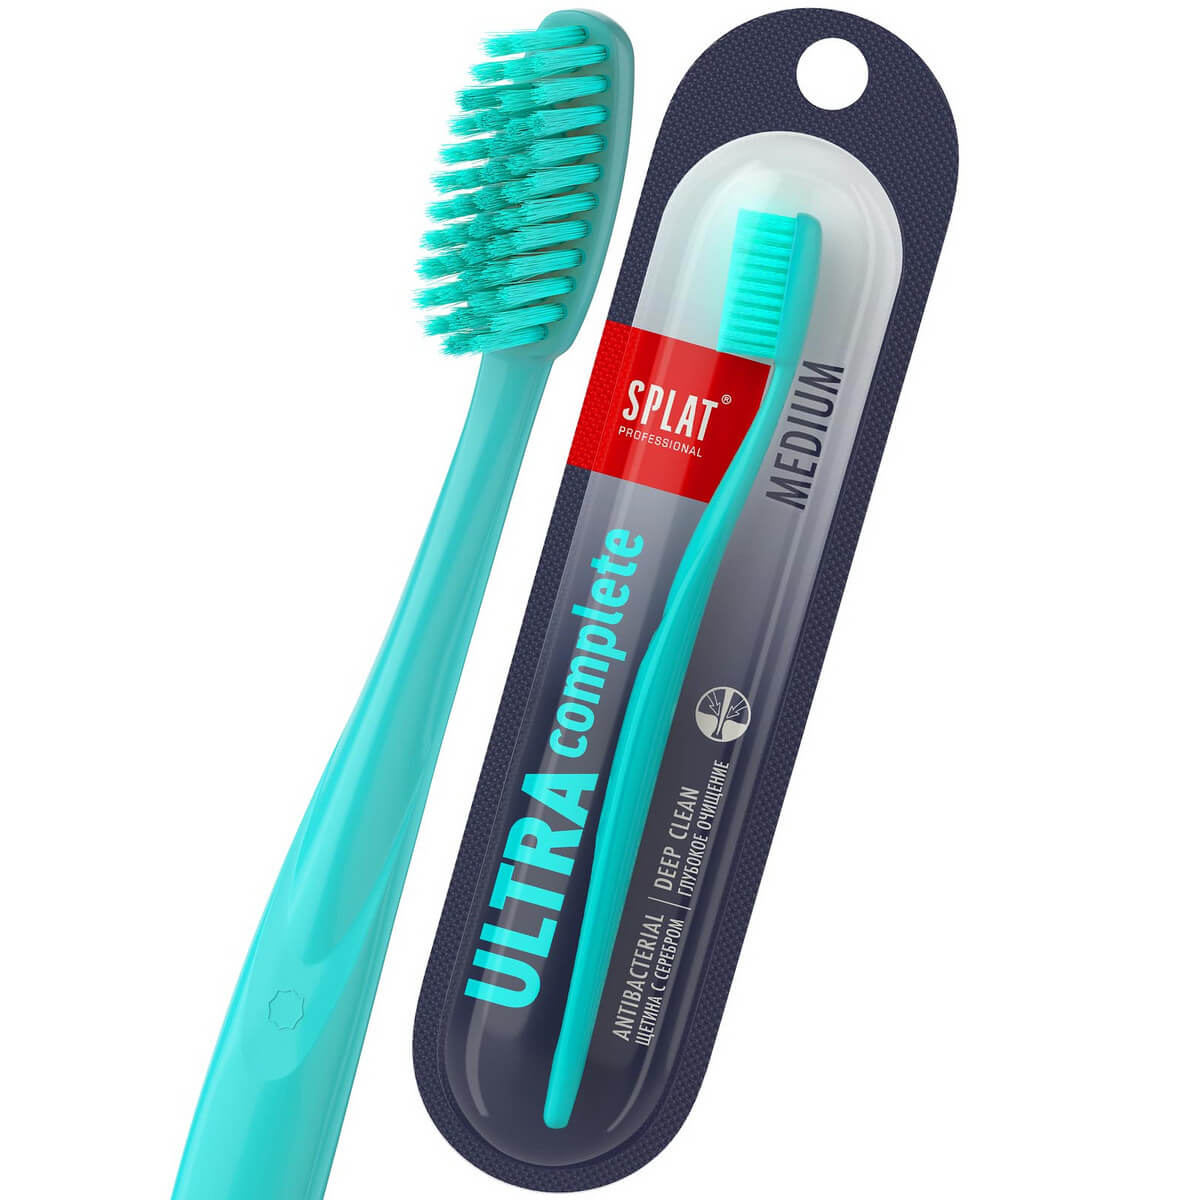 Зубная щетка Ultra Complete, средняя, цвет в ассортименте, SPLAT Professional